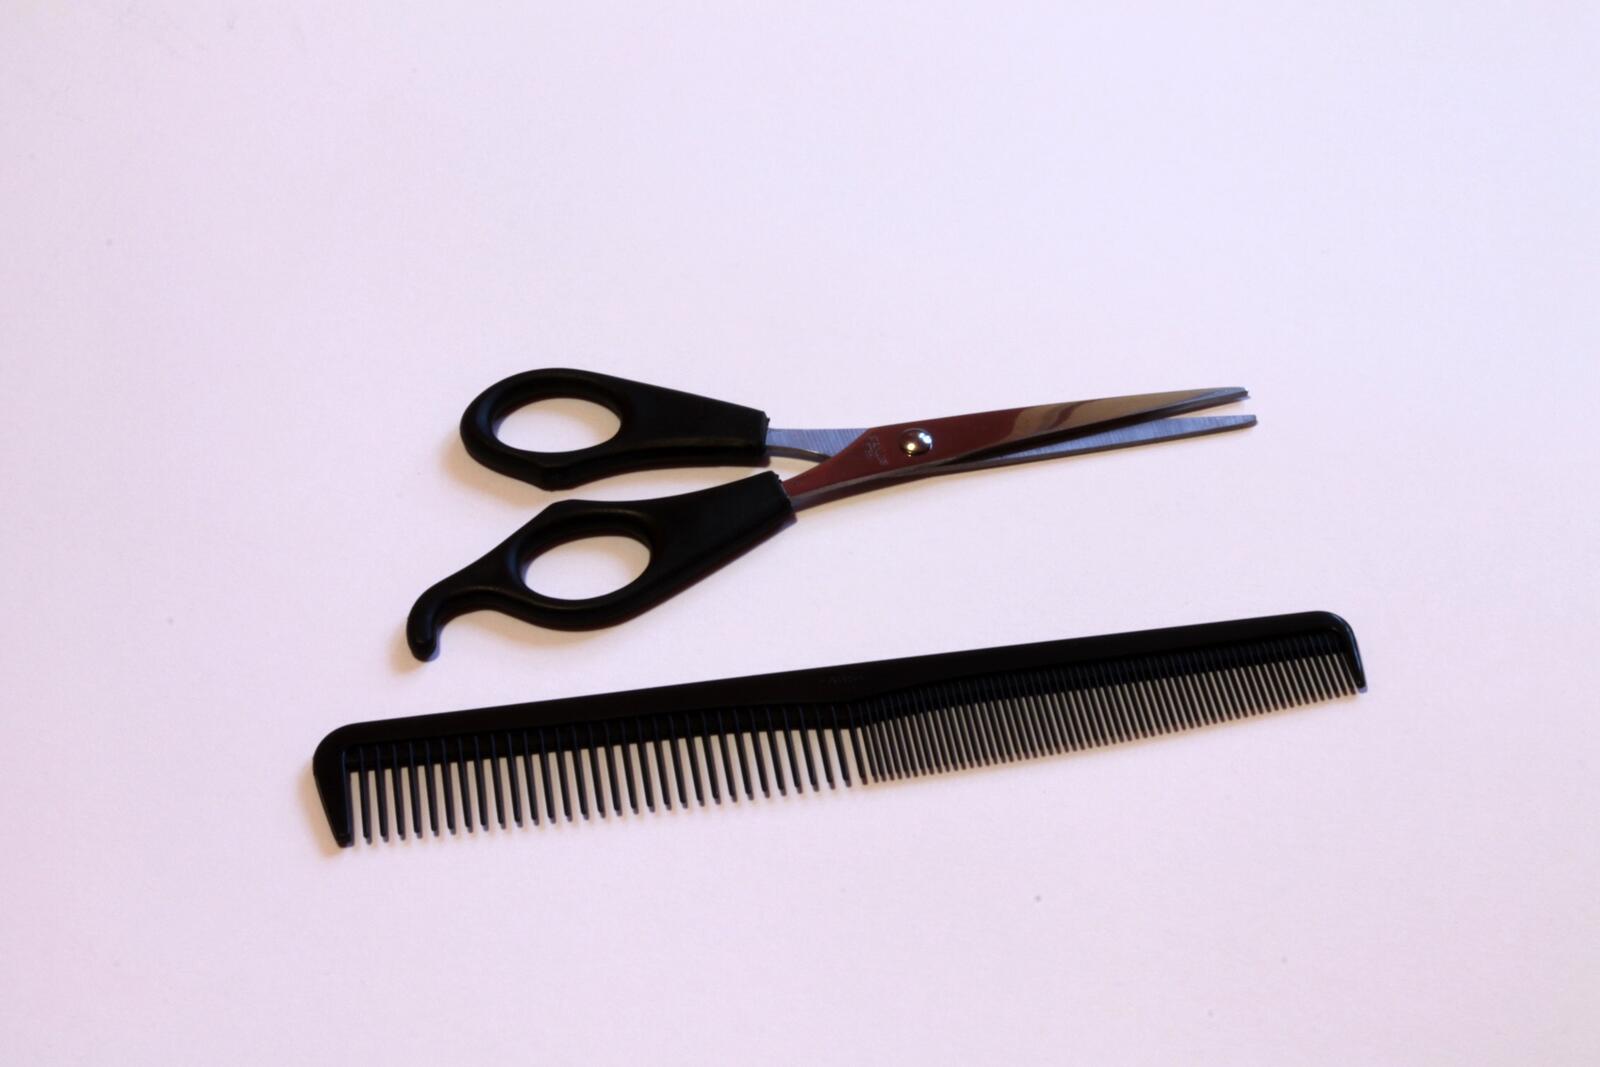 Wallpapers instrument scissors comb on the desktop